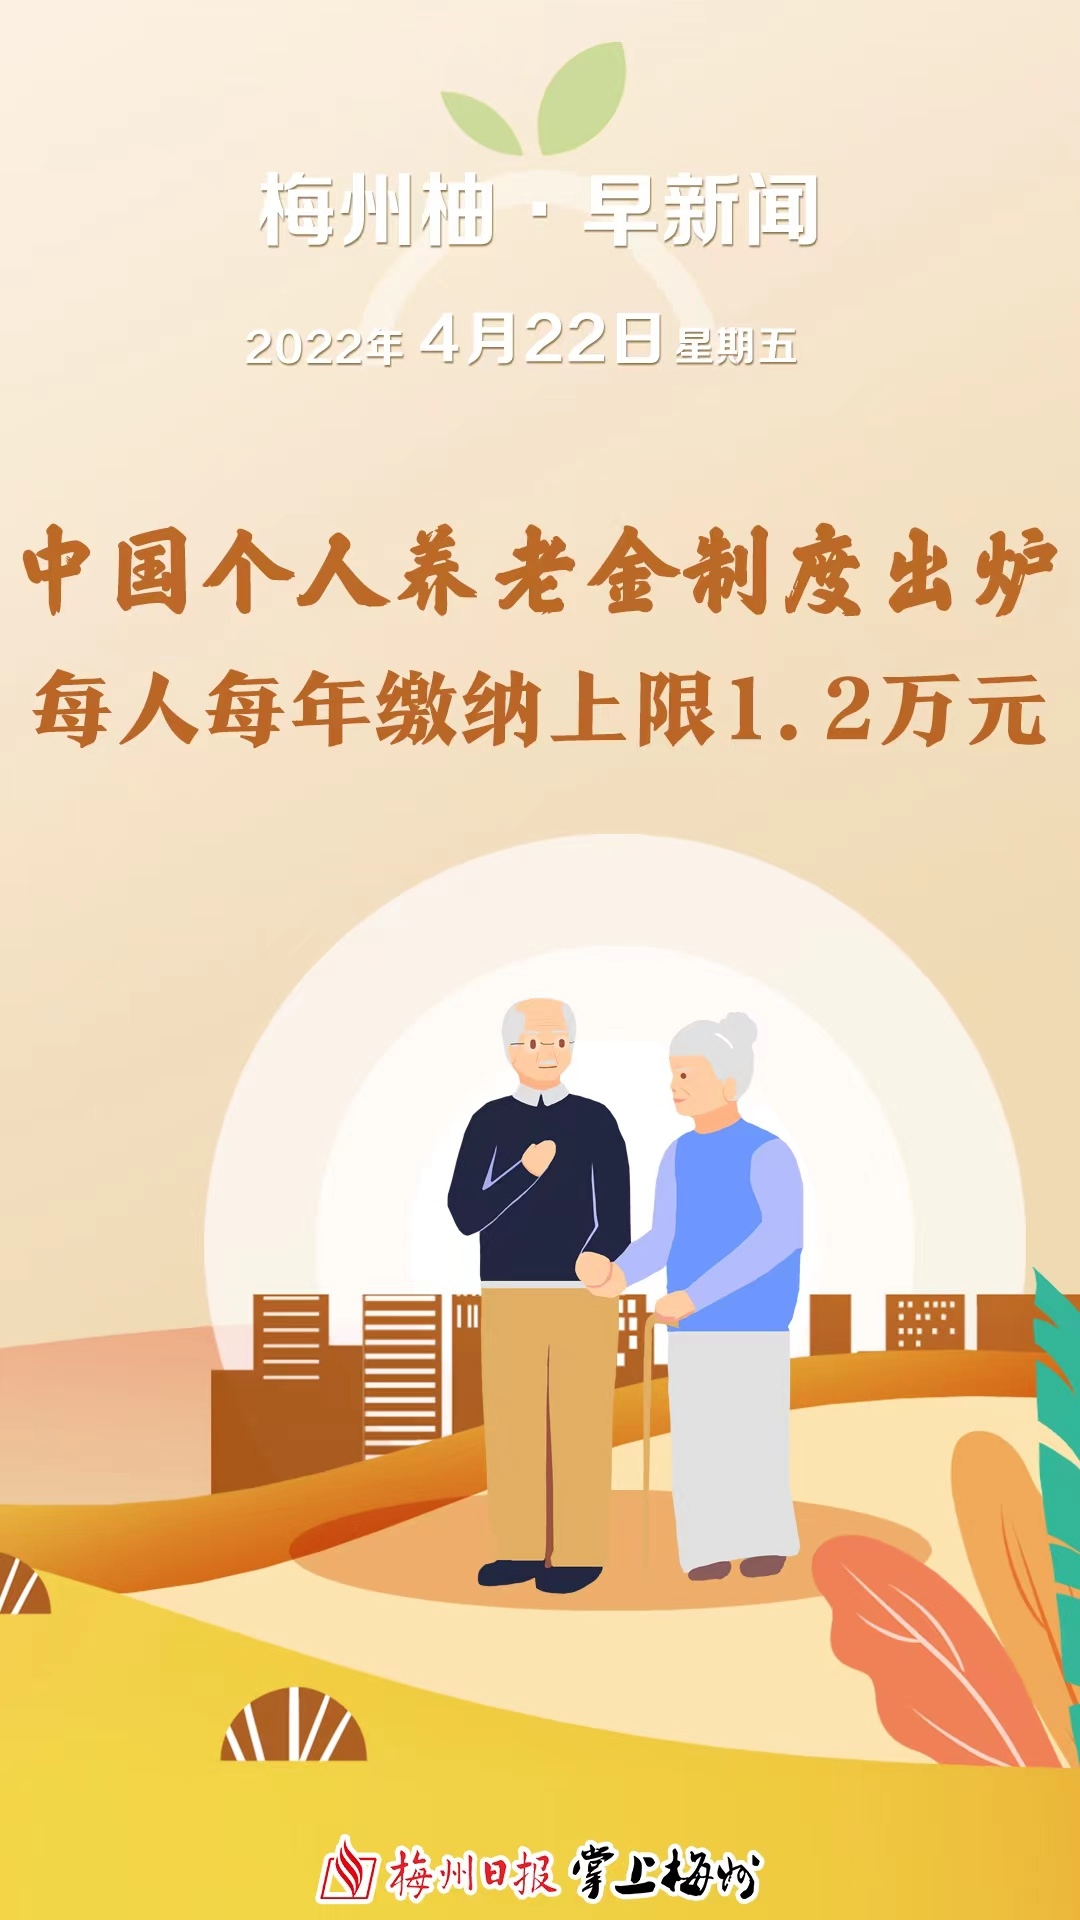 梅州柚早新闻丨丘成桐院士受聘为清华大学讲席教授个人养老金制度来了